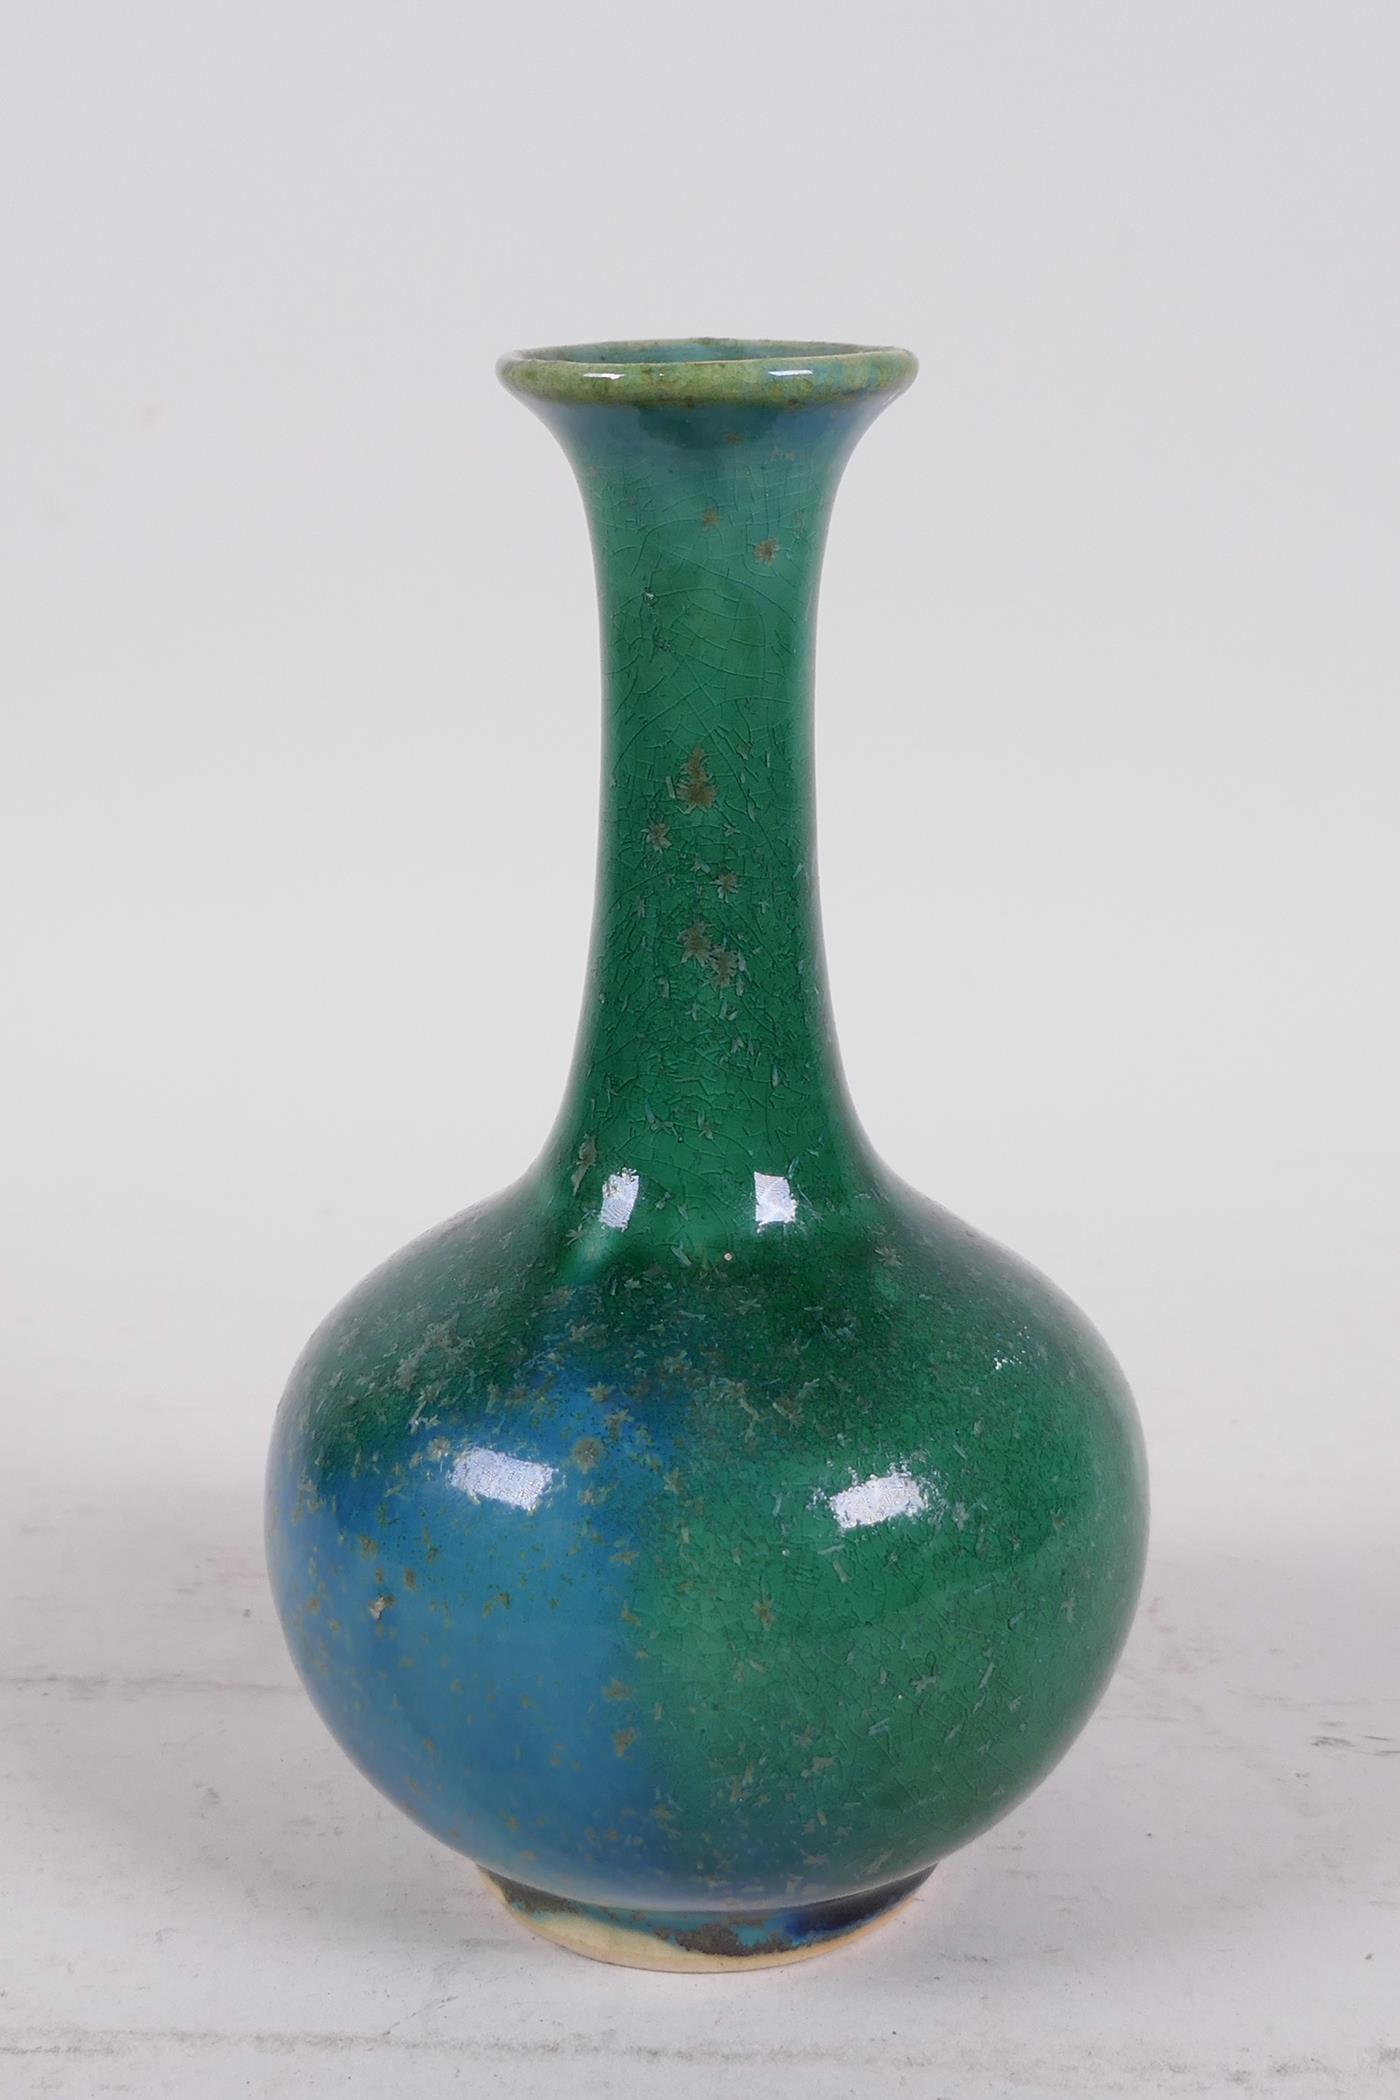 A Chinese mottled green glazed pottery bottle vase, 6" high